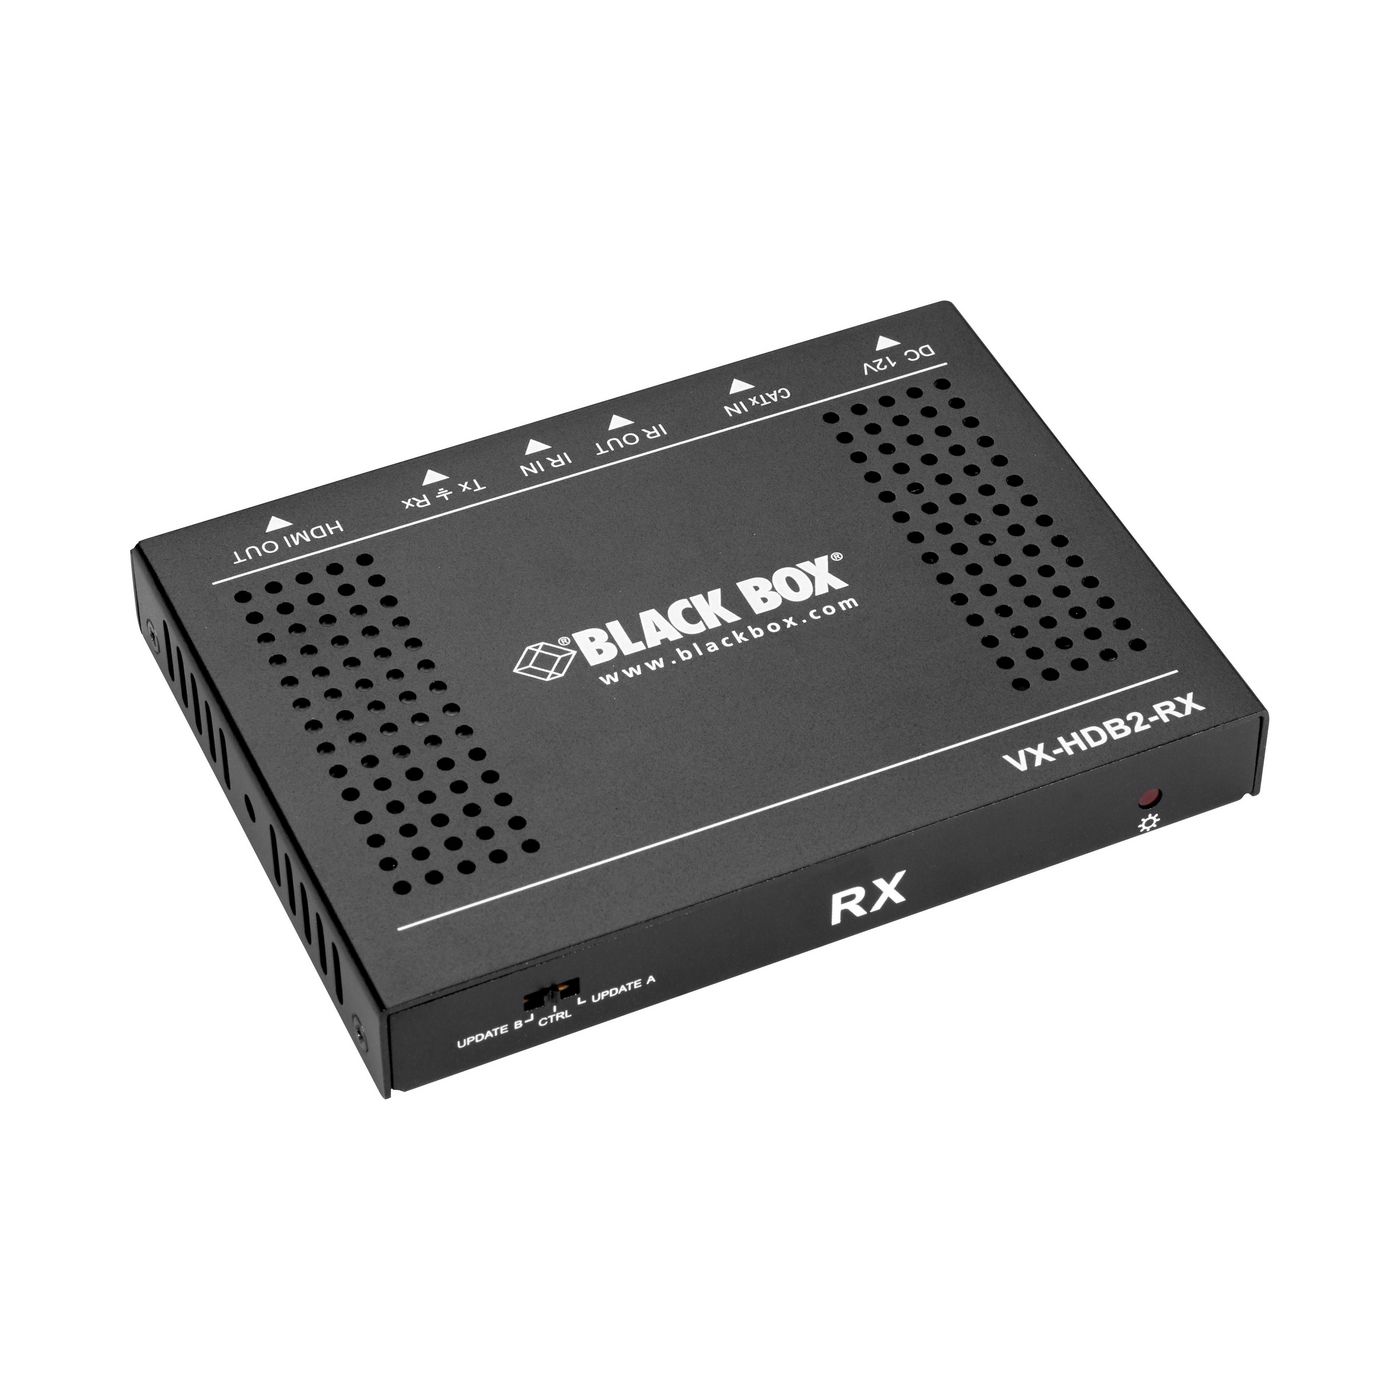 Black-Box VX-HDB2-RX W126135710 HDMI 2.0 4K 60Hz 4:4:4 VIDEO 